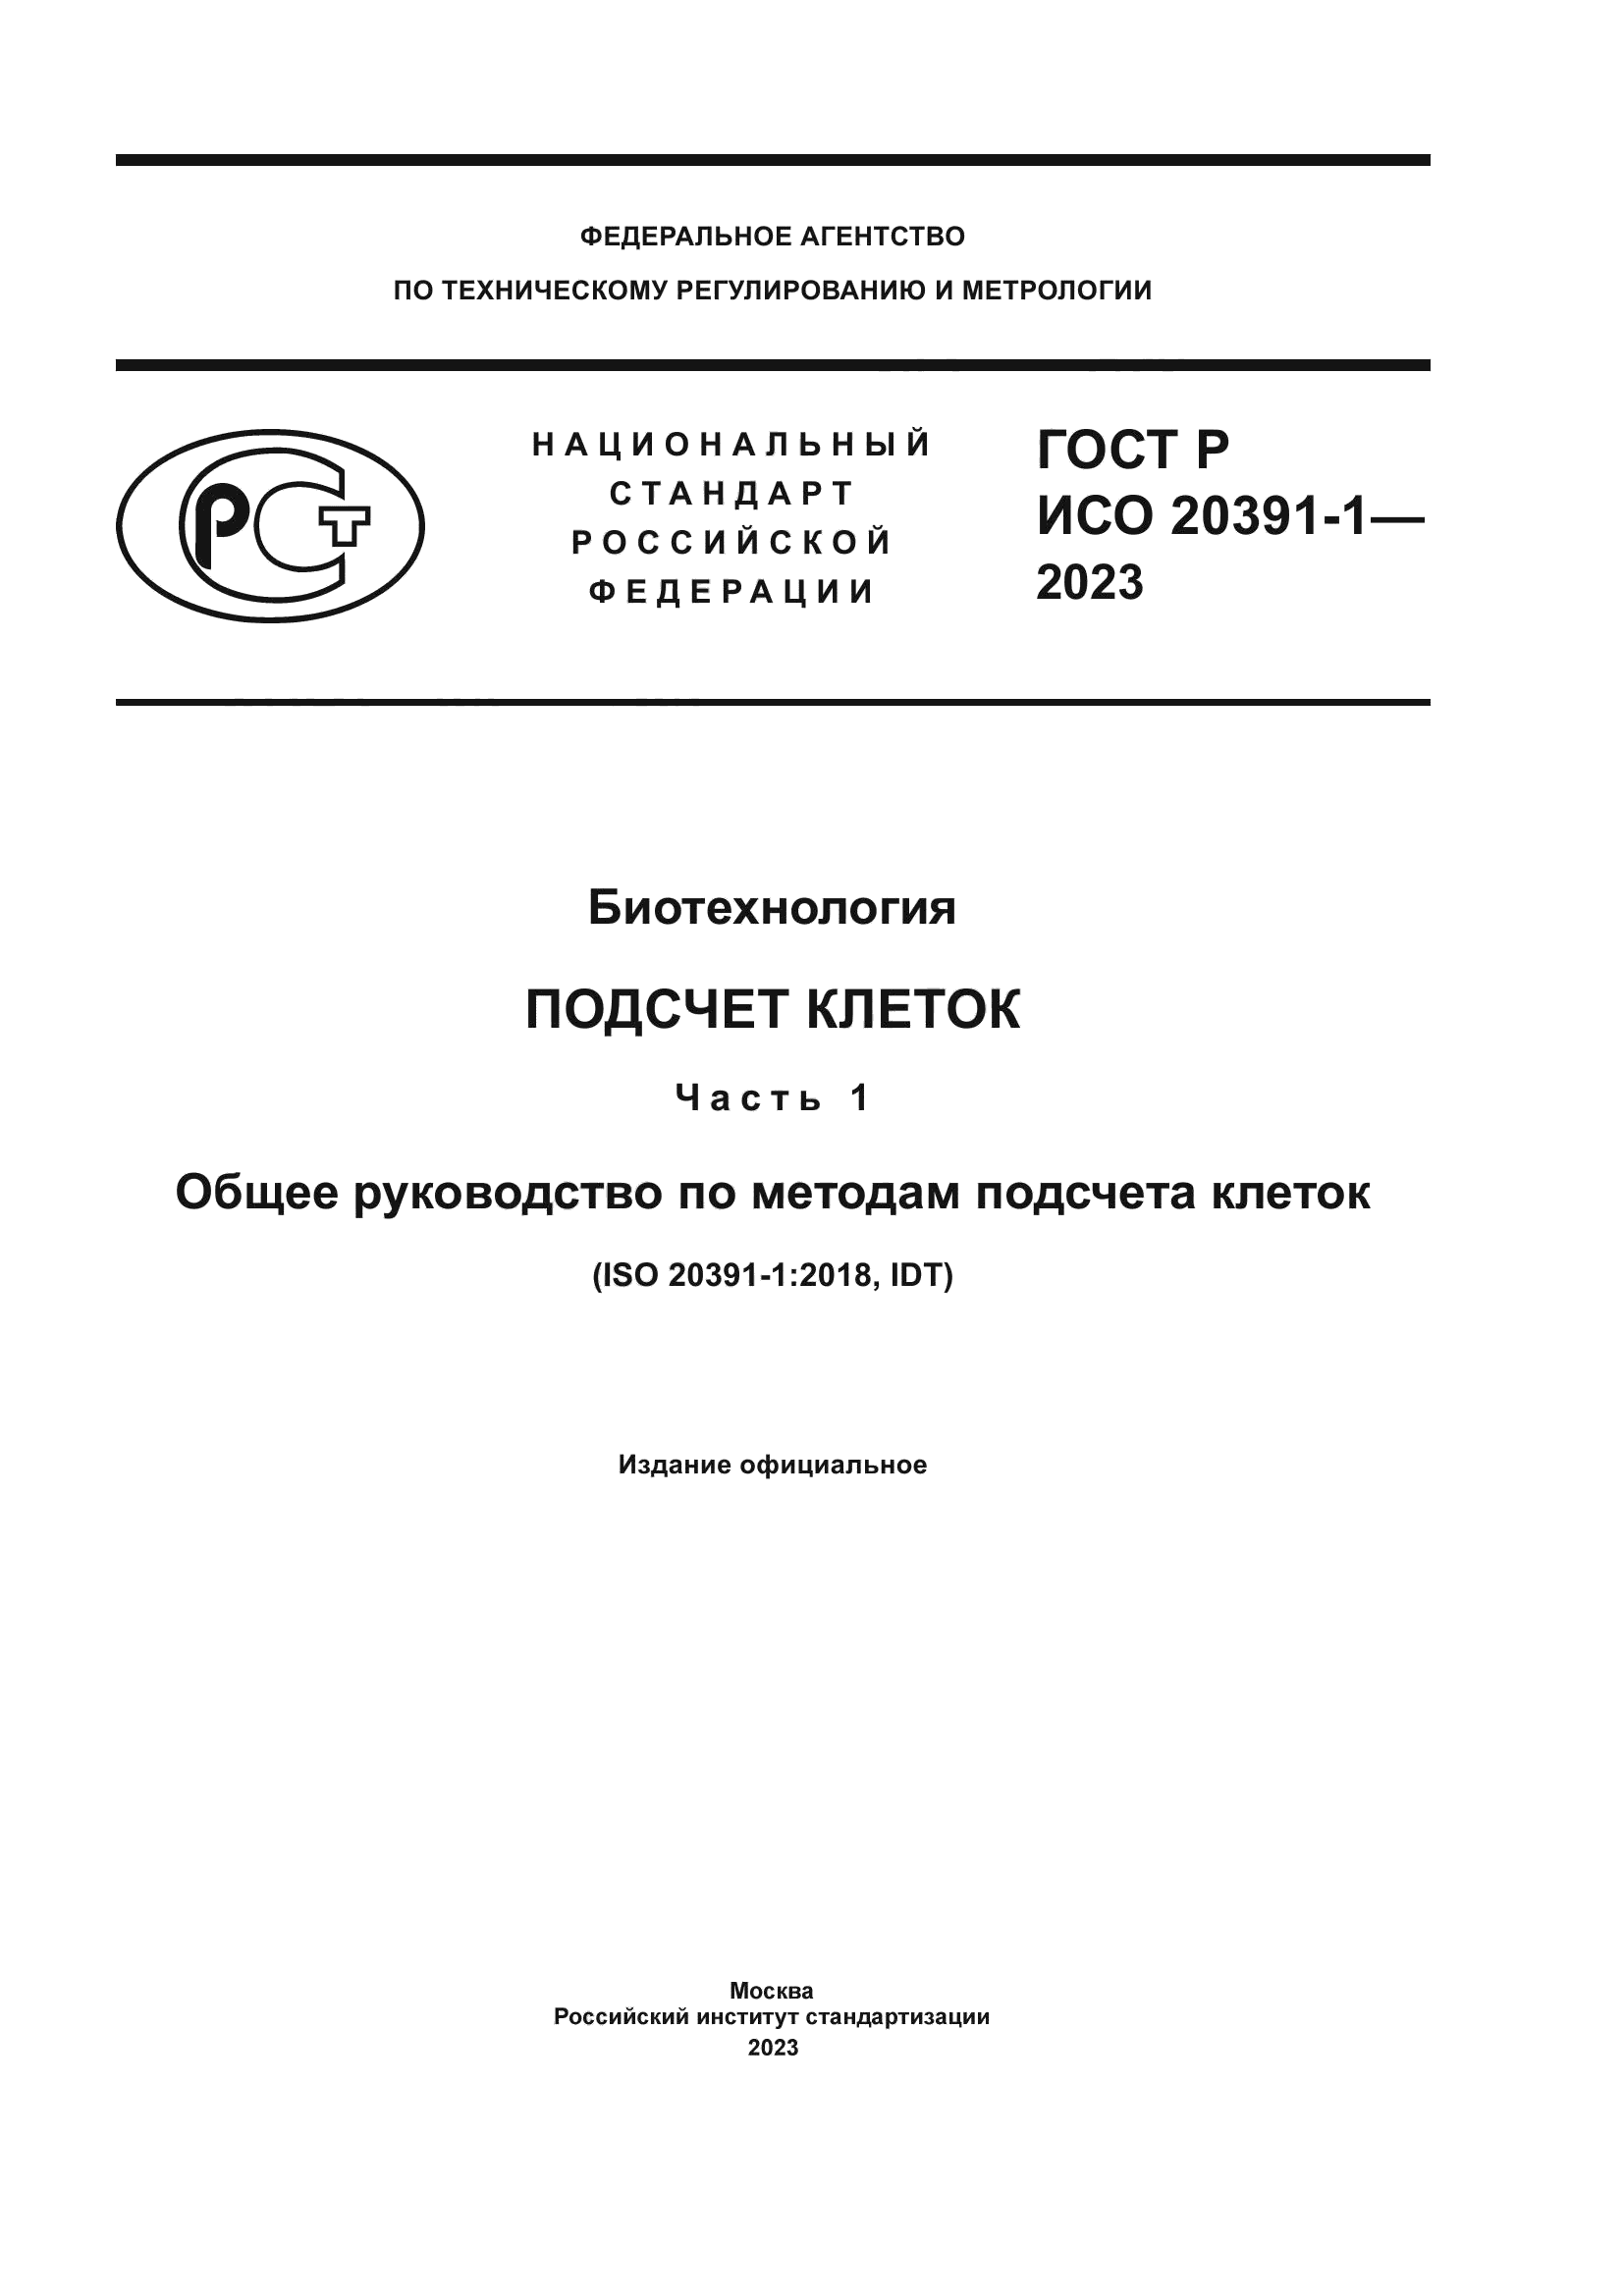 ГОСТ Р ИСО 20391-1-2023